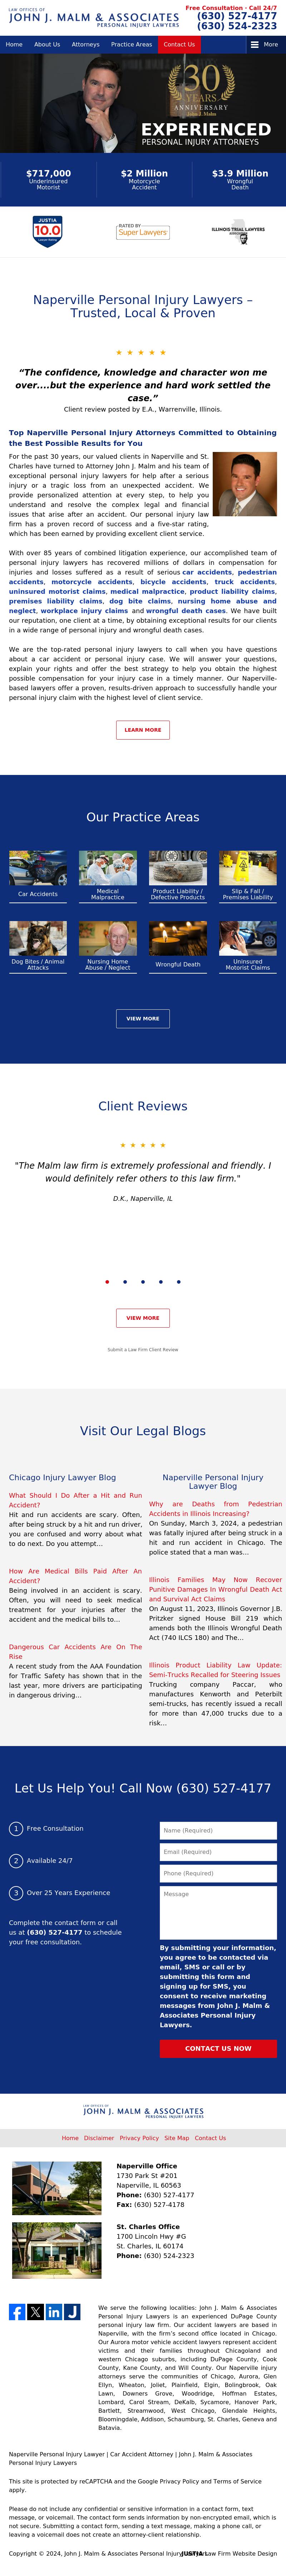 John J. Malm & Associates - Chicago IL Lawyers